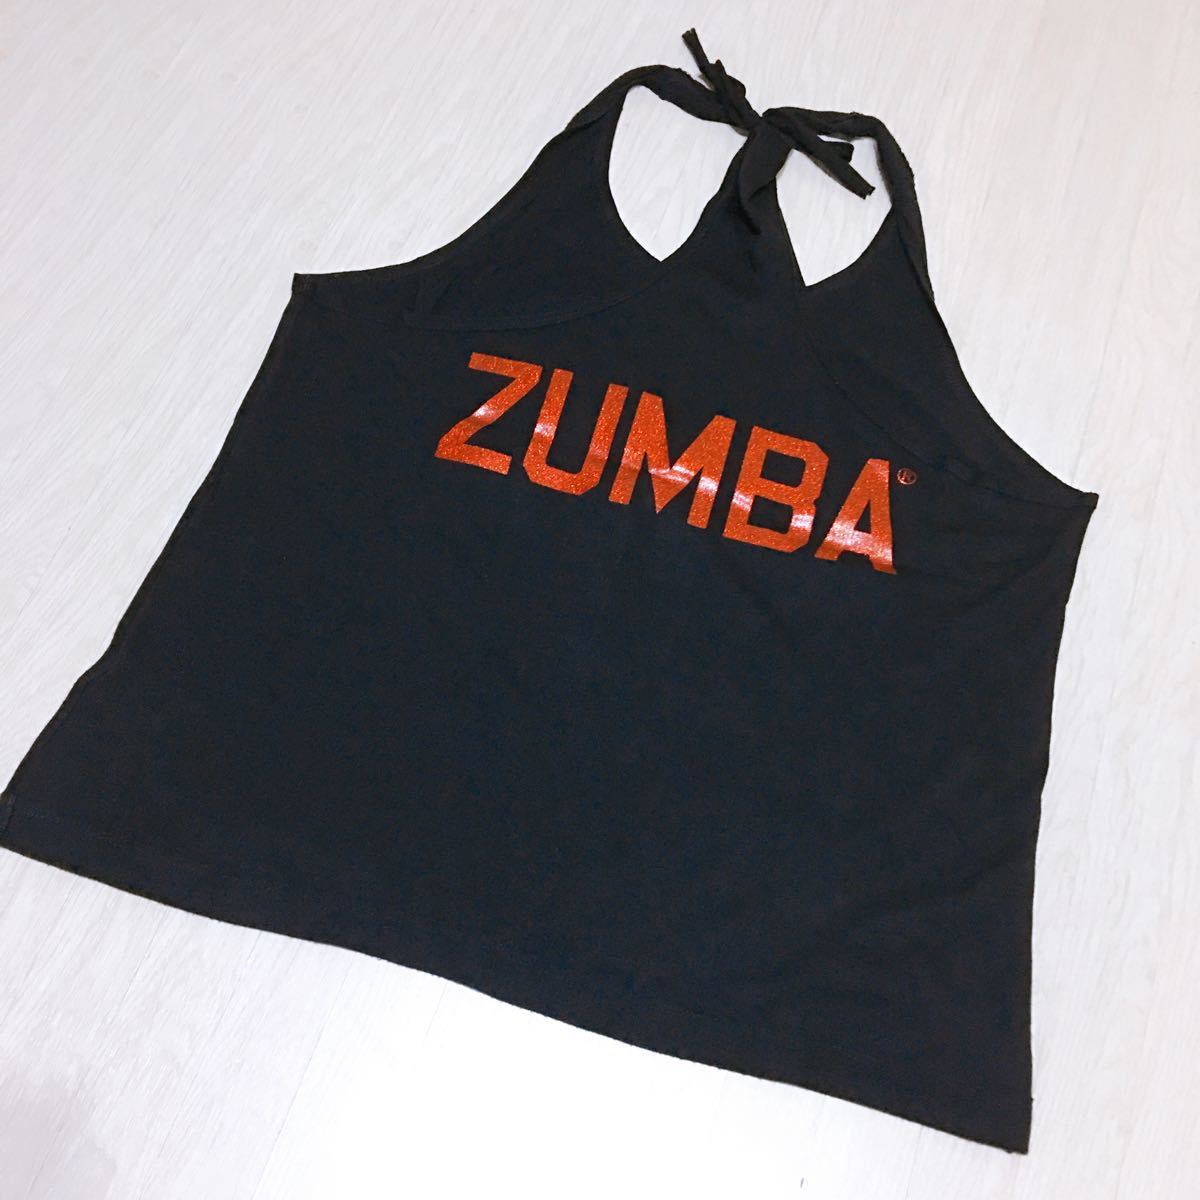 美品 ZUMBA ズンバ トップス タンクトップ リメイク XL (M.L.XL)ダンス フィットネス ジム ヒップホップ エアロ